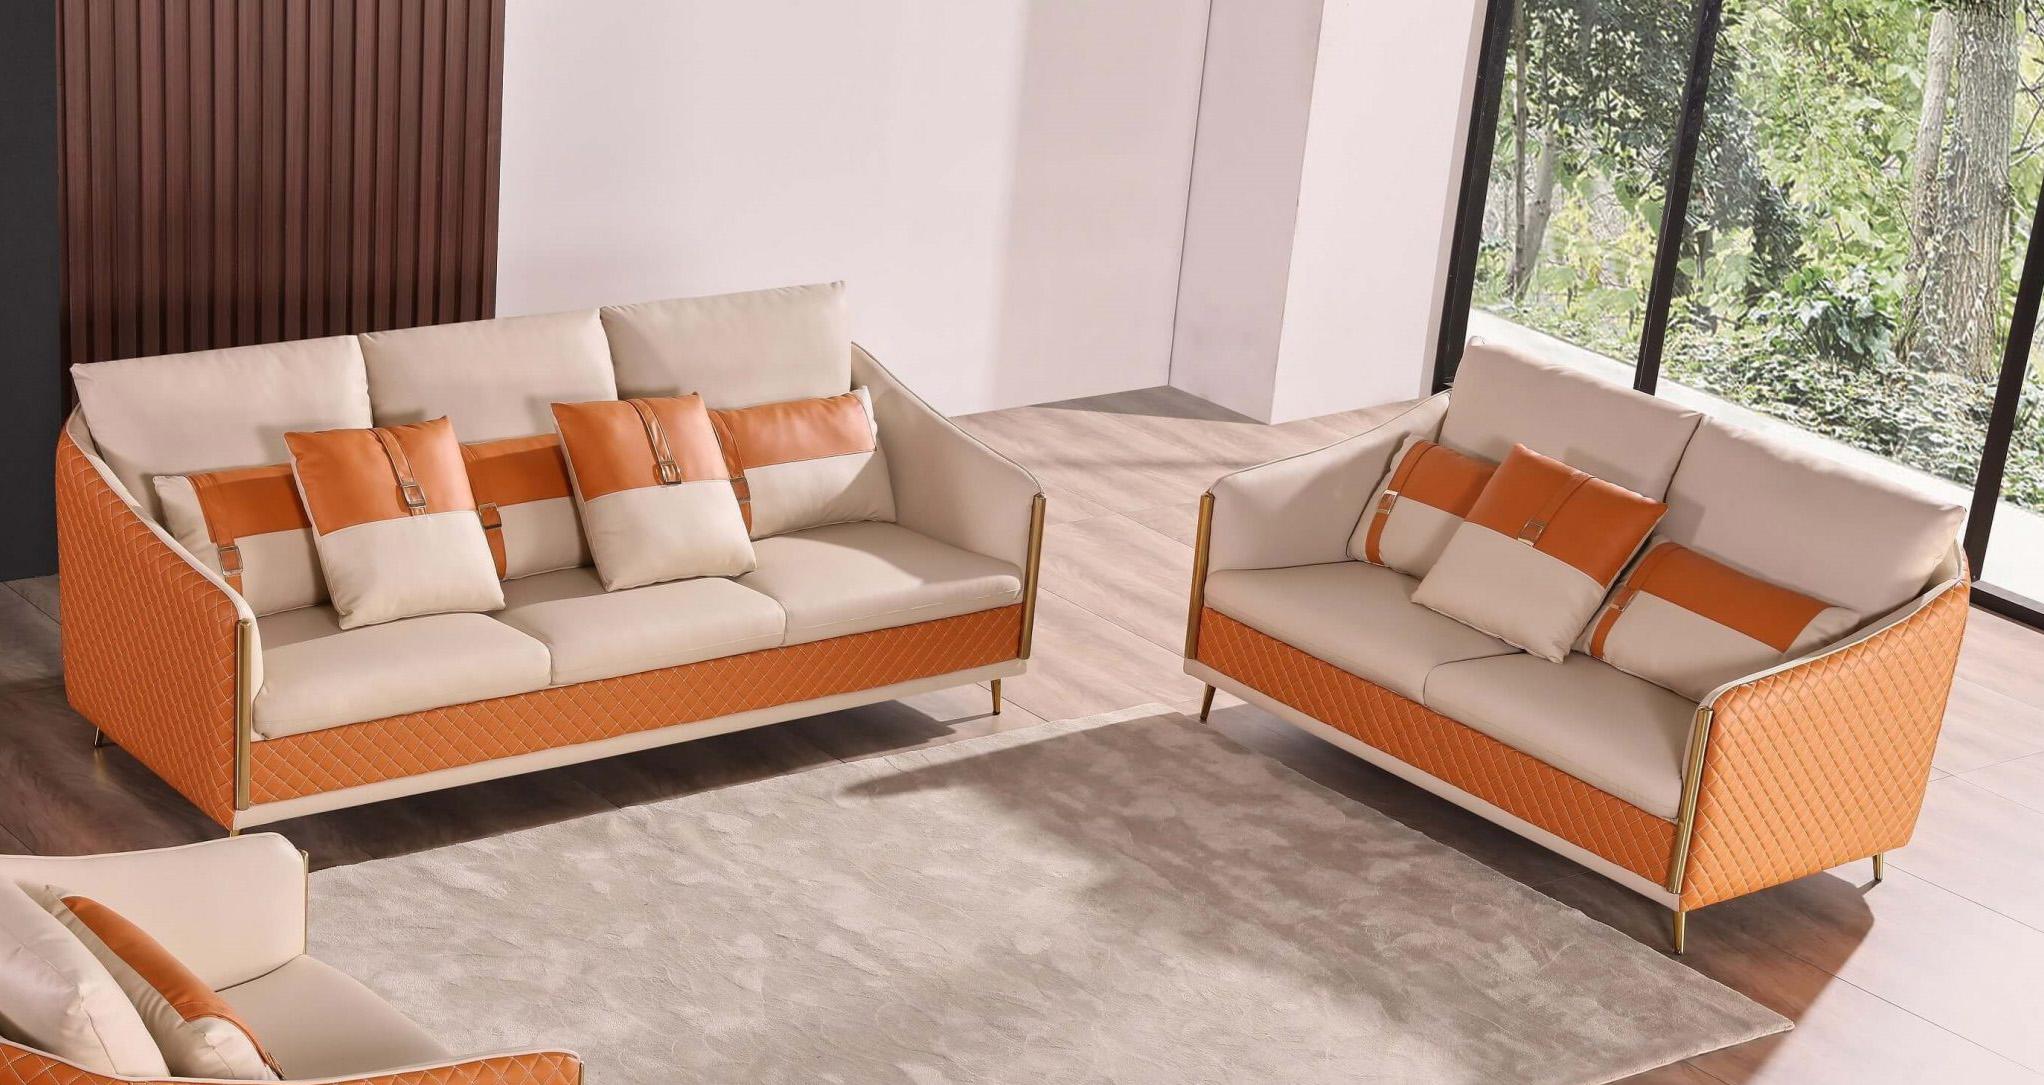 

                    
EUROPEAN FURNITURE ICARO Sofa Off-White/Orange Italian Leather Purchase 
